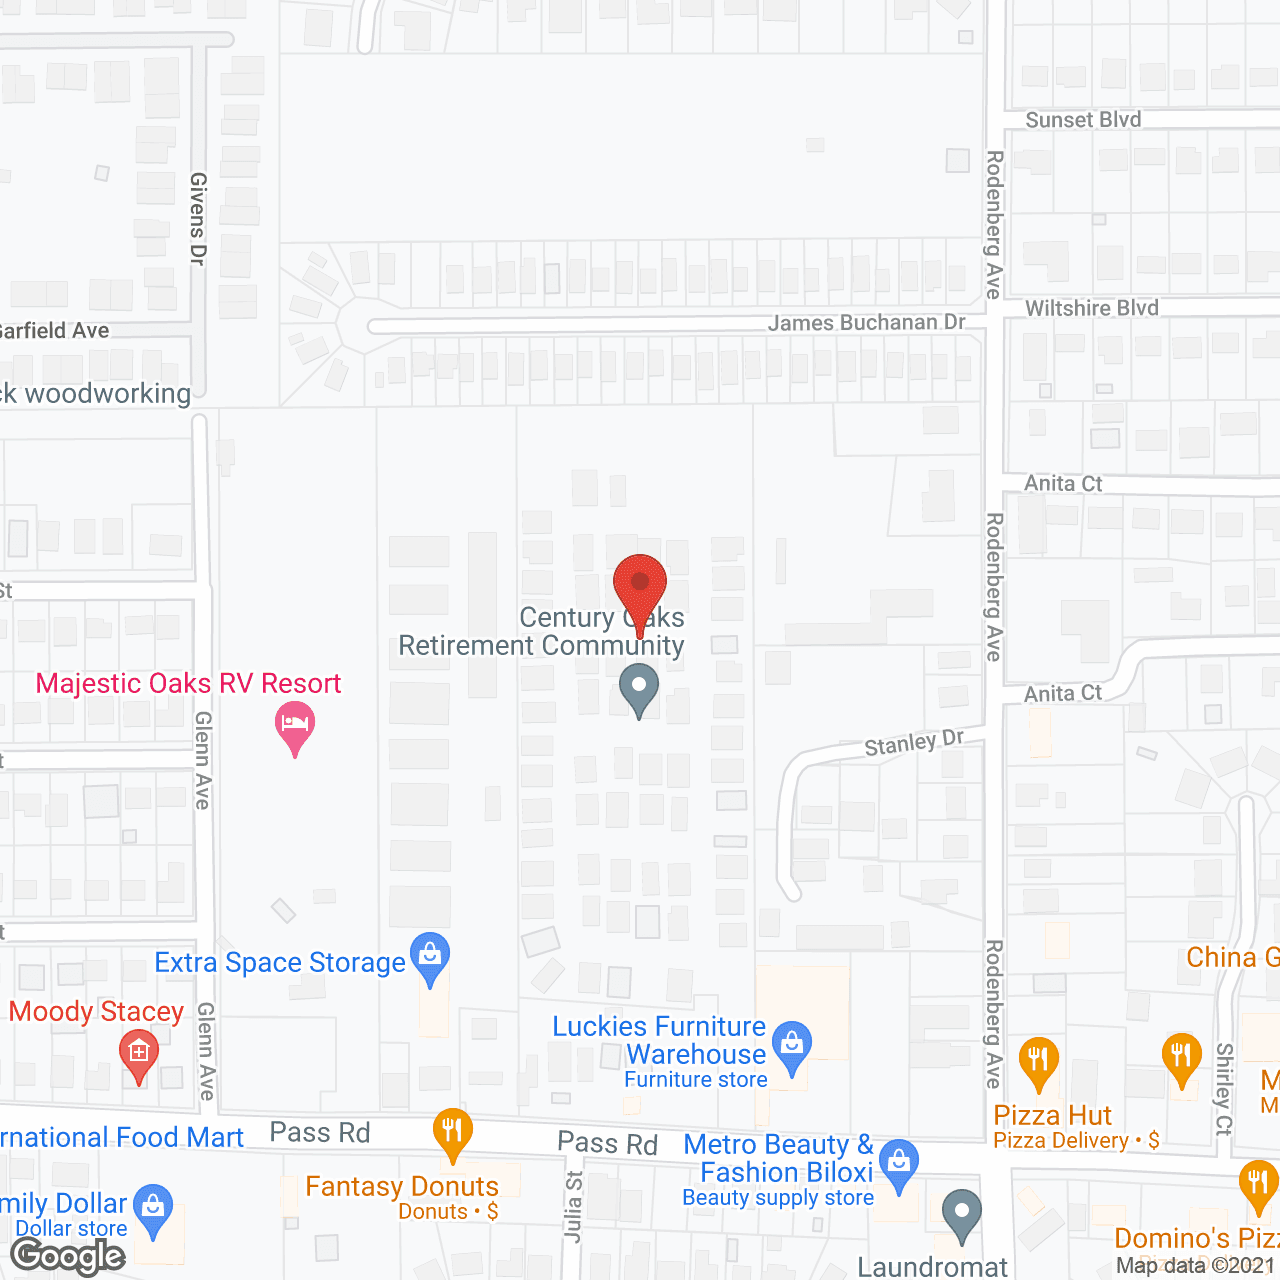 Century Oaks in google map